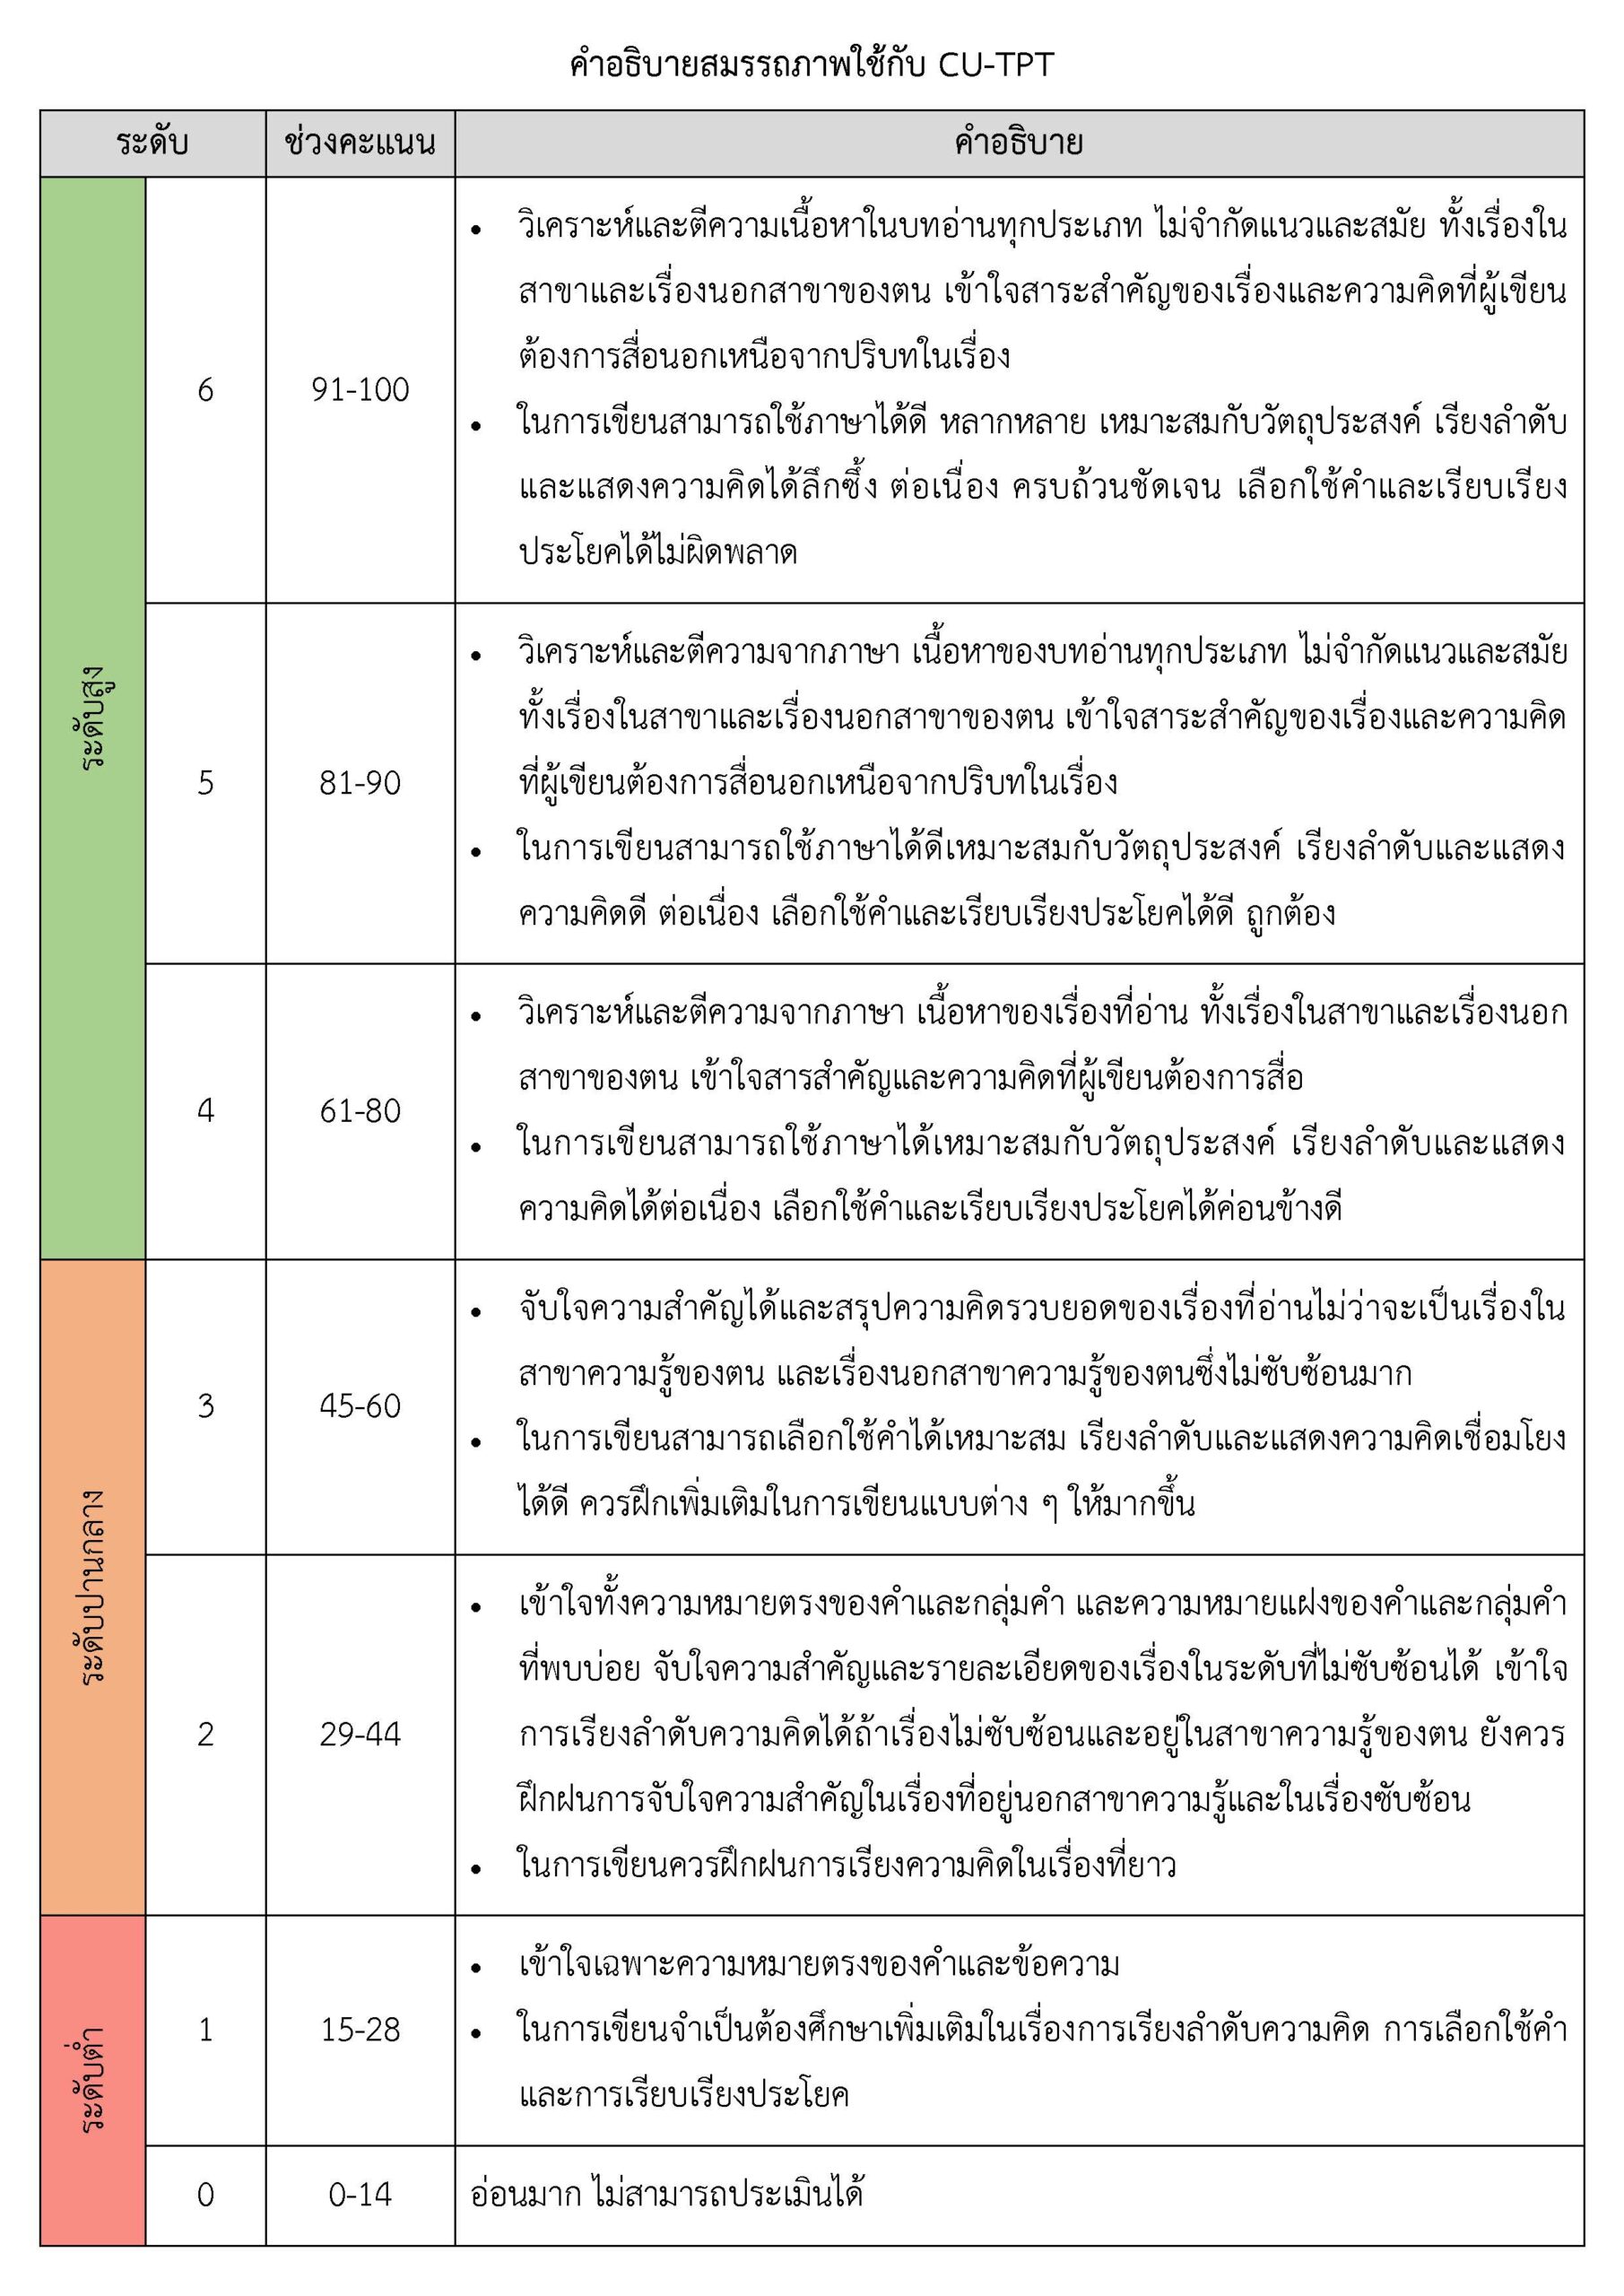 การทดสอบสมรรถภาพการใช้ภาษาไทยสำหรับบุคคลทั่วไป (Cu-Tpt) - สถาบันภาษาไทยสิรินธร  จุฬาลงกรณ์มหาวิทยาลัย